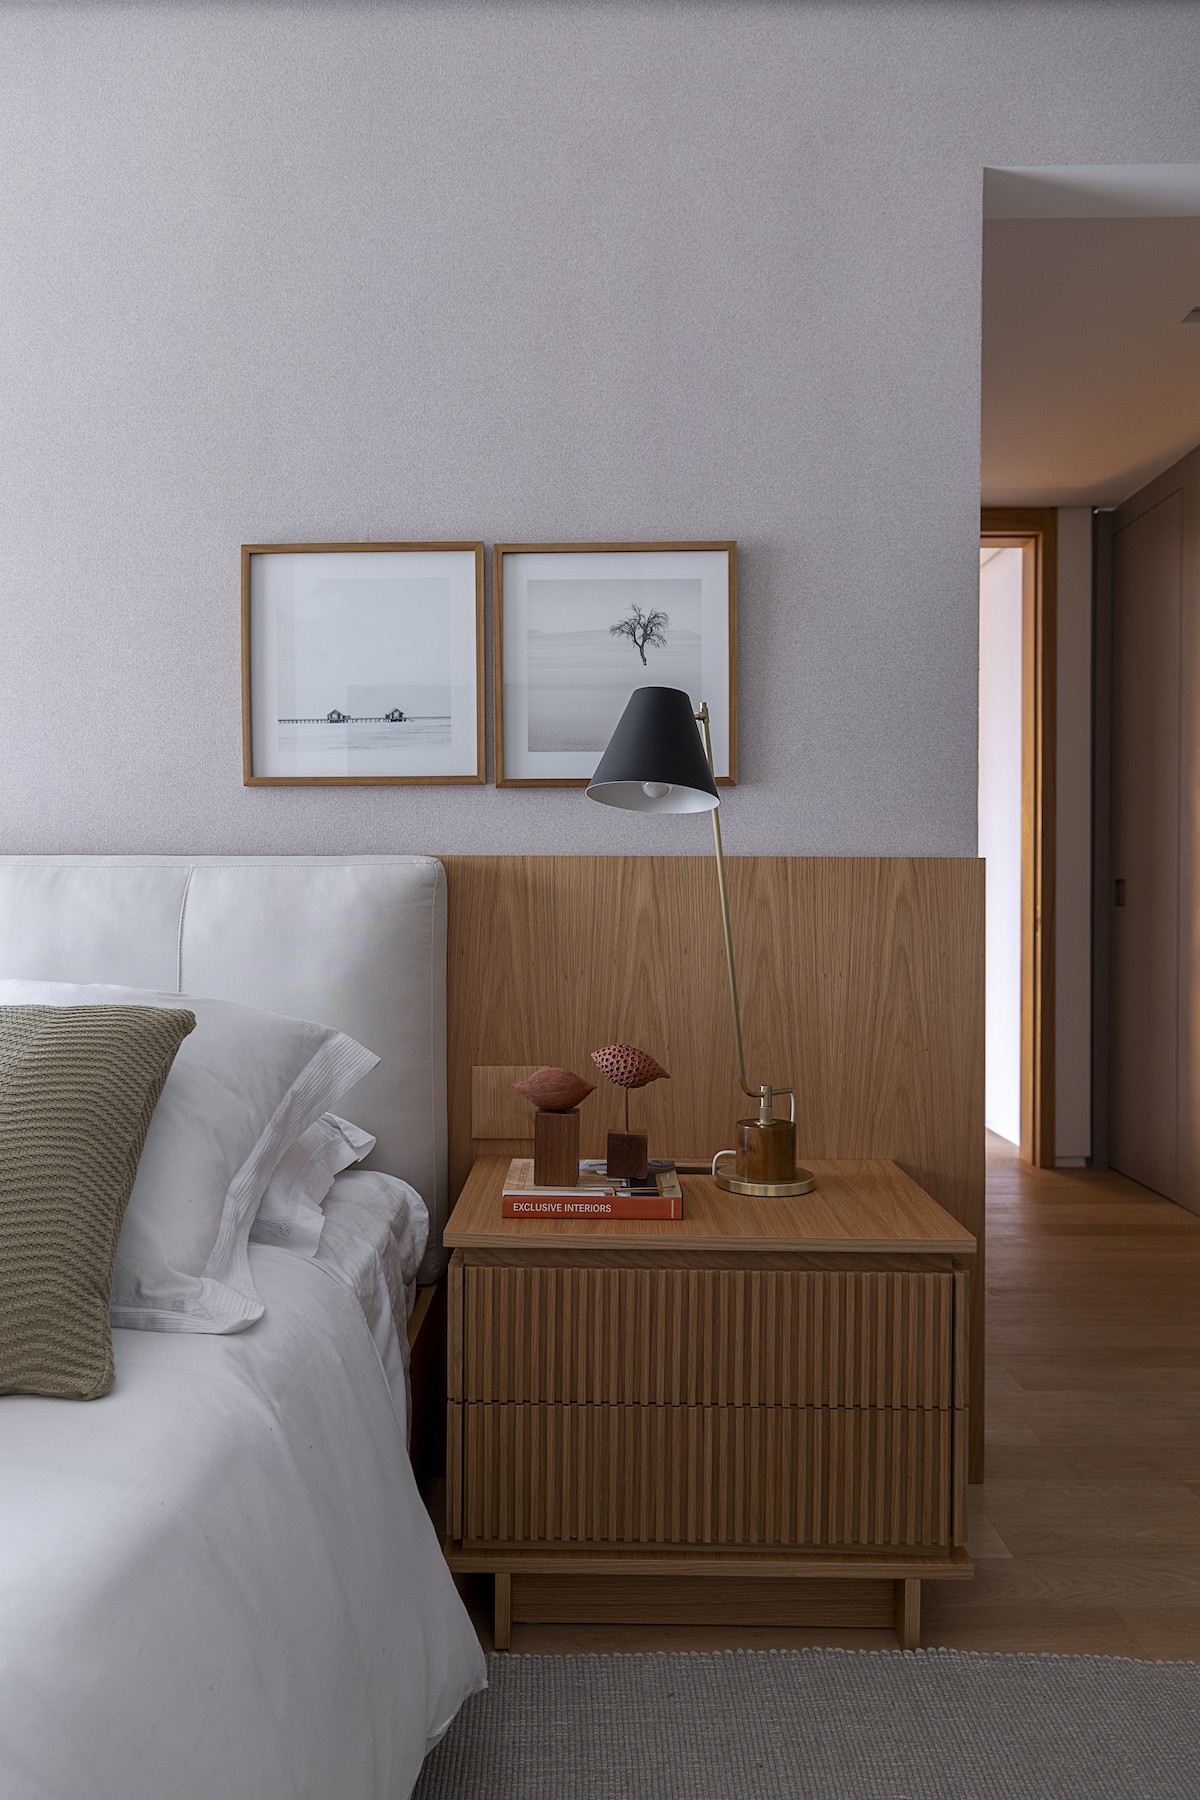 QUARTO | A cabeceira, feita com madeira, torna o quarto mais aconchegante e relaxante (Foto: Divulgação / Rafael Renzo)